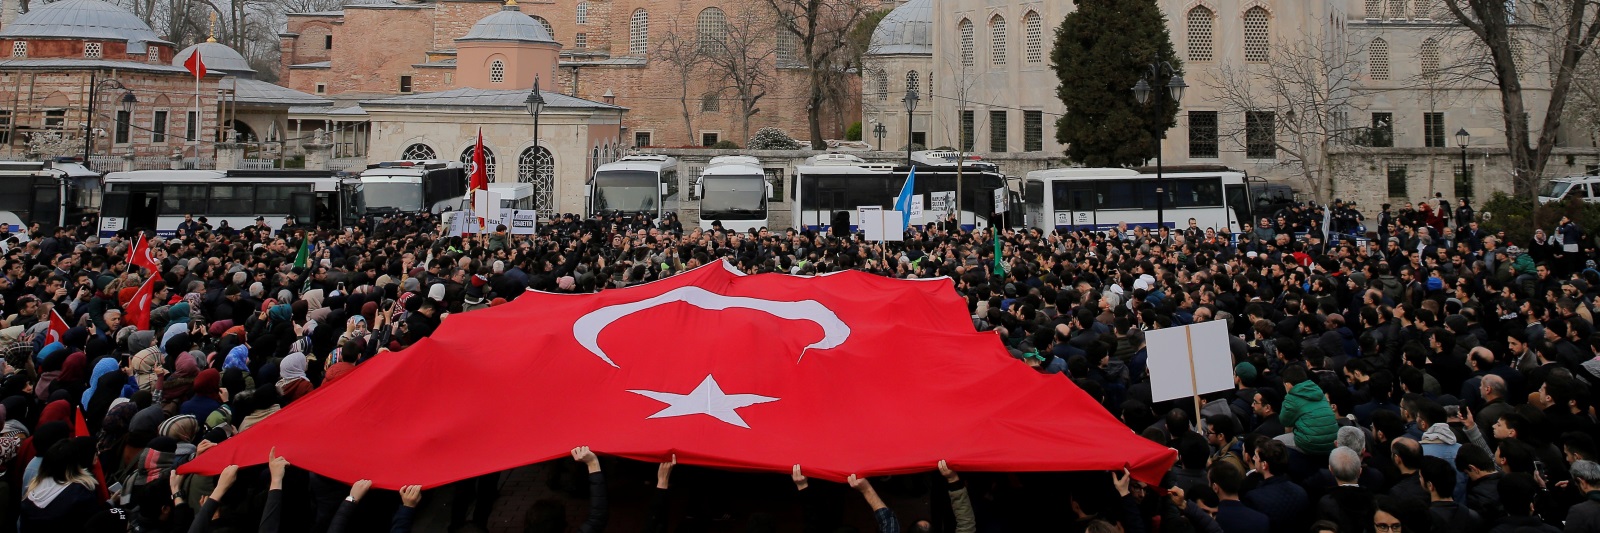 إرهاصات انقلاب في تركيا!   ترك برس